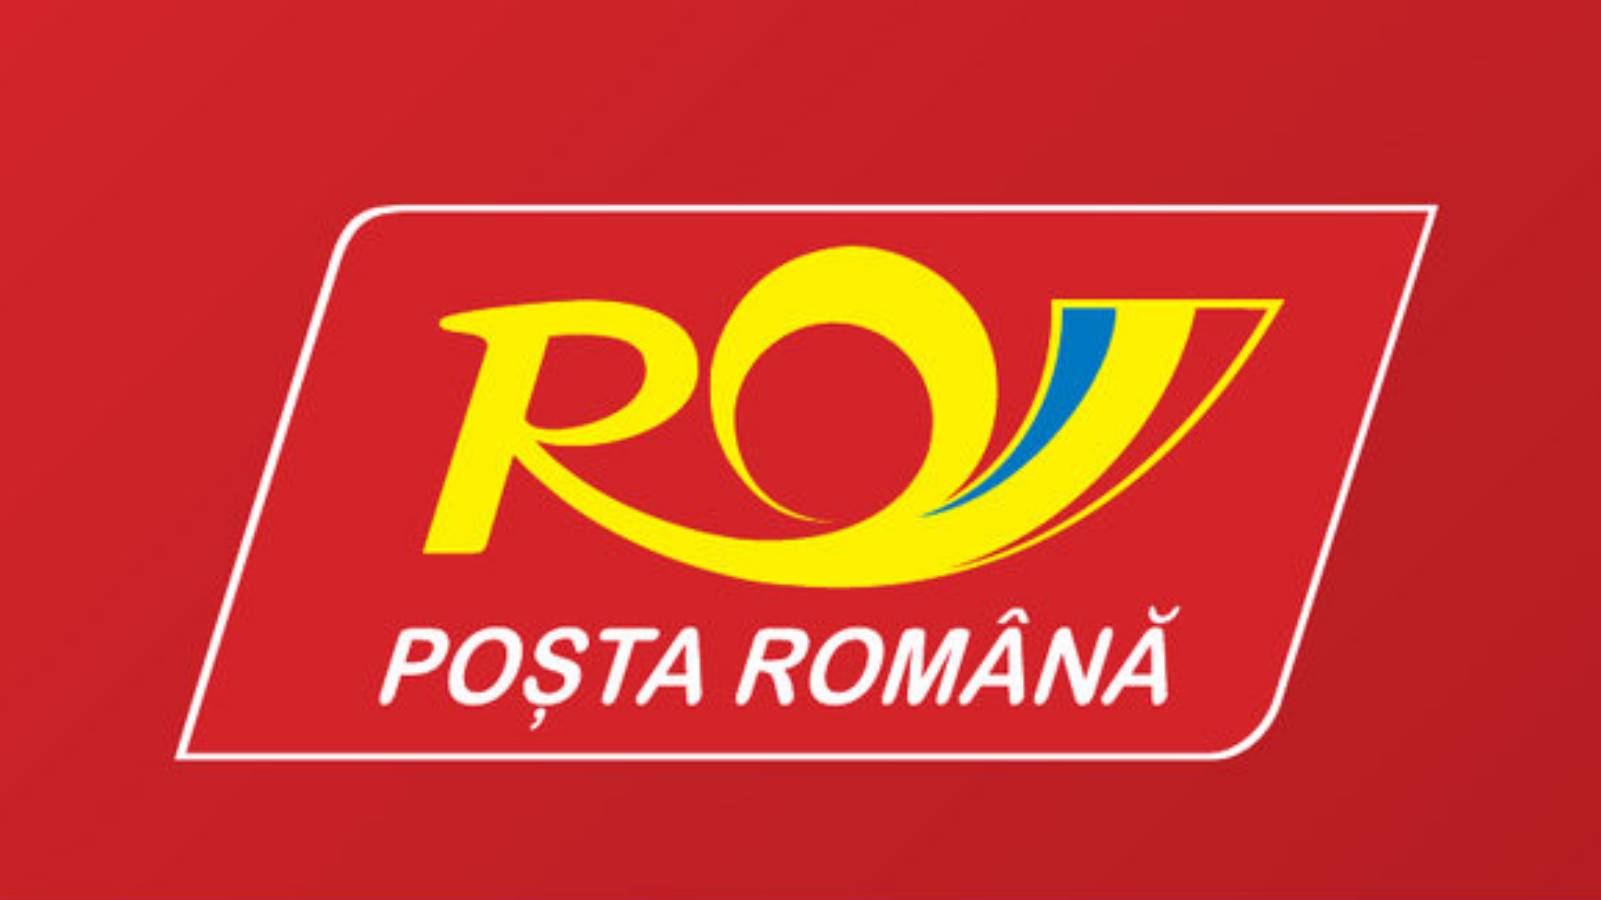 Den rumänska posten är bräcklig